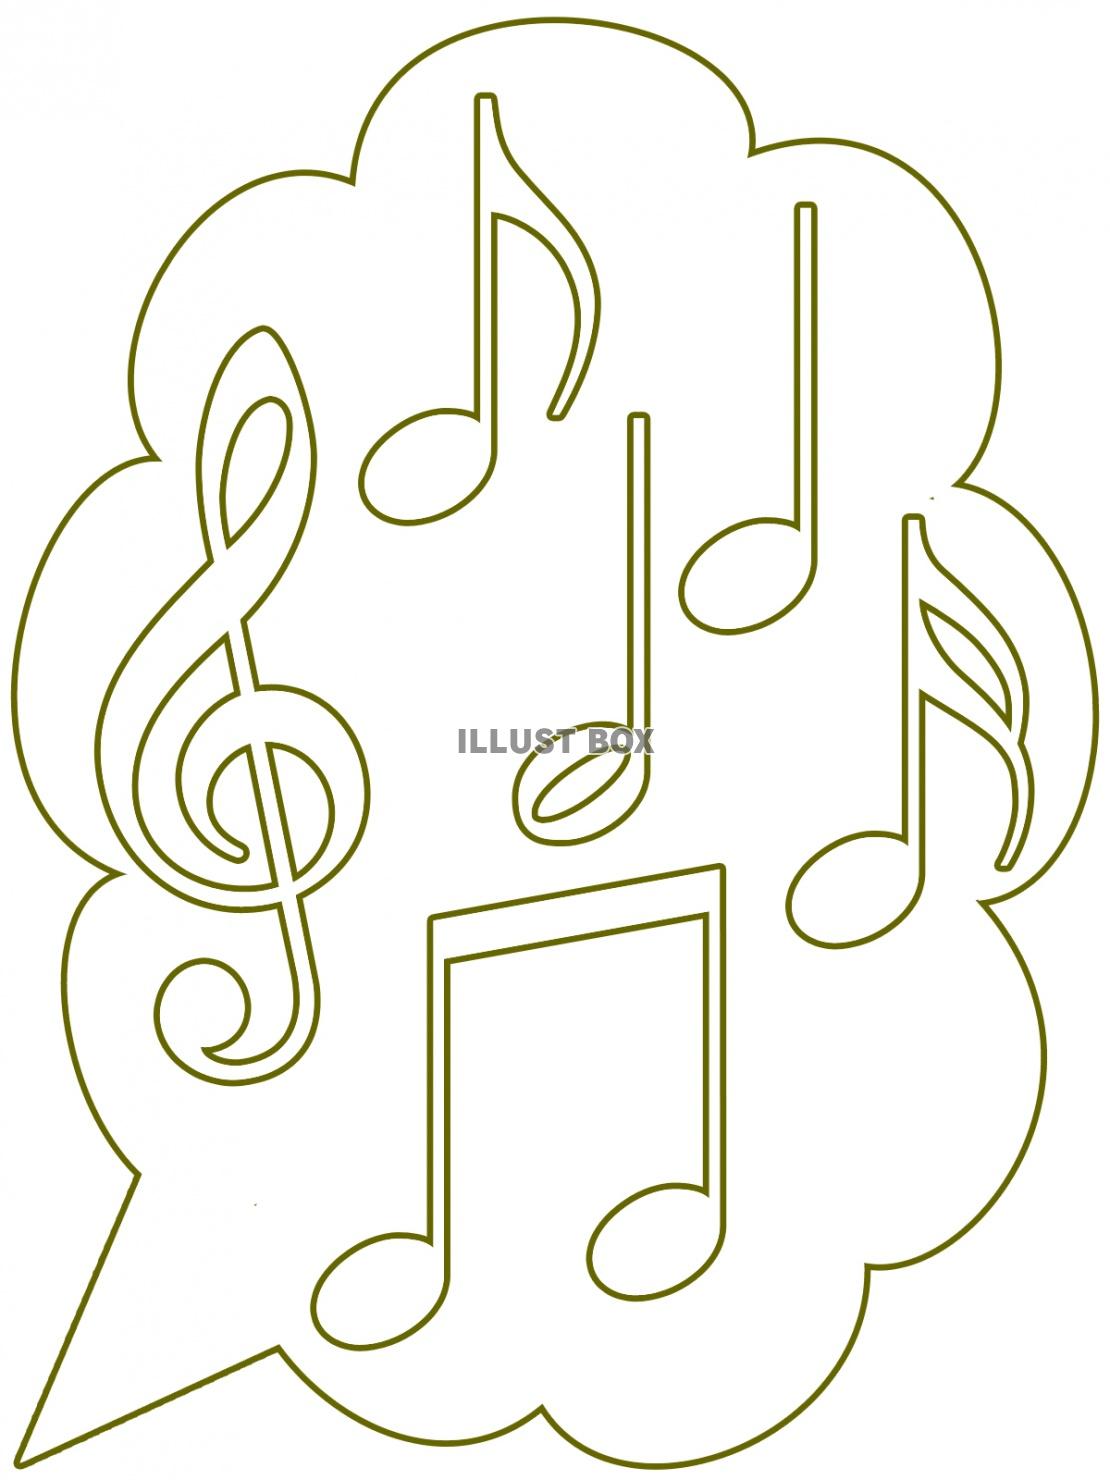 ト音記号と音符の壁紙画像シンプル背景素材イラスト